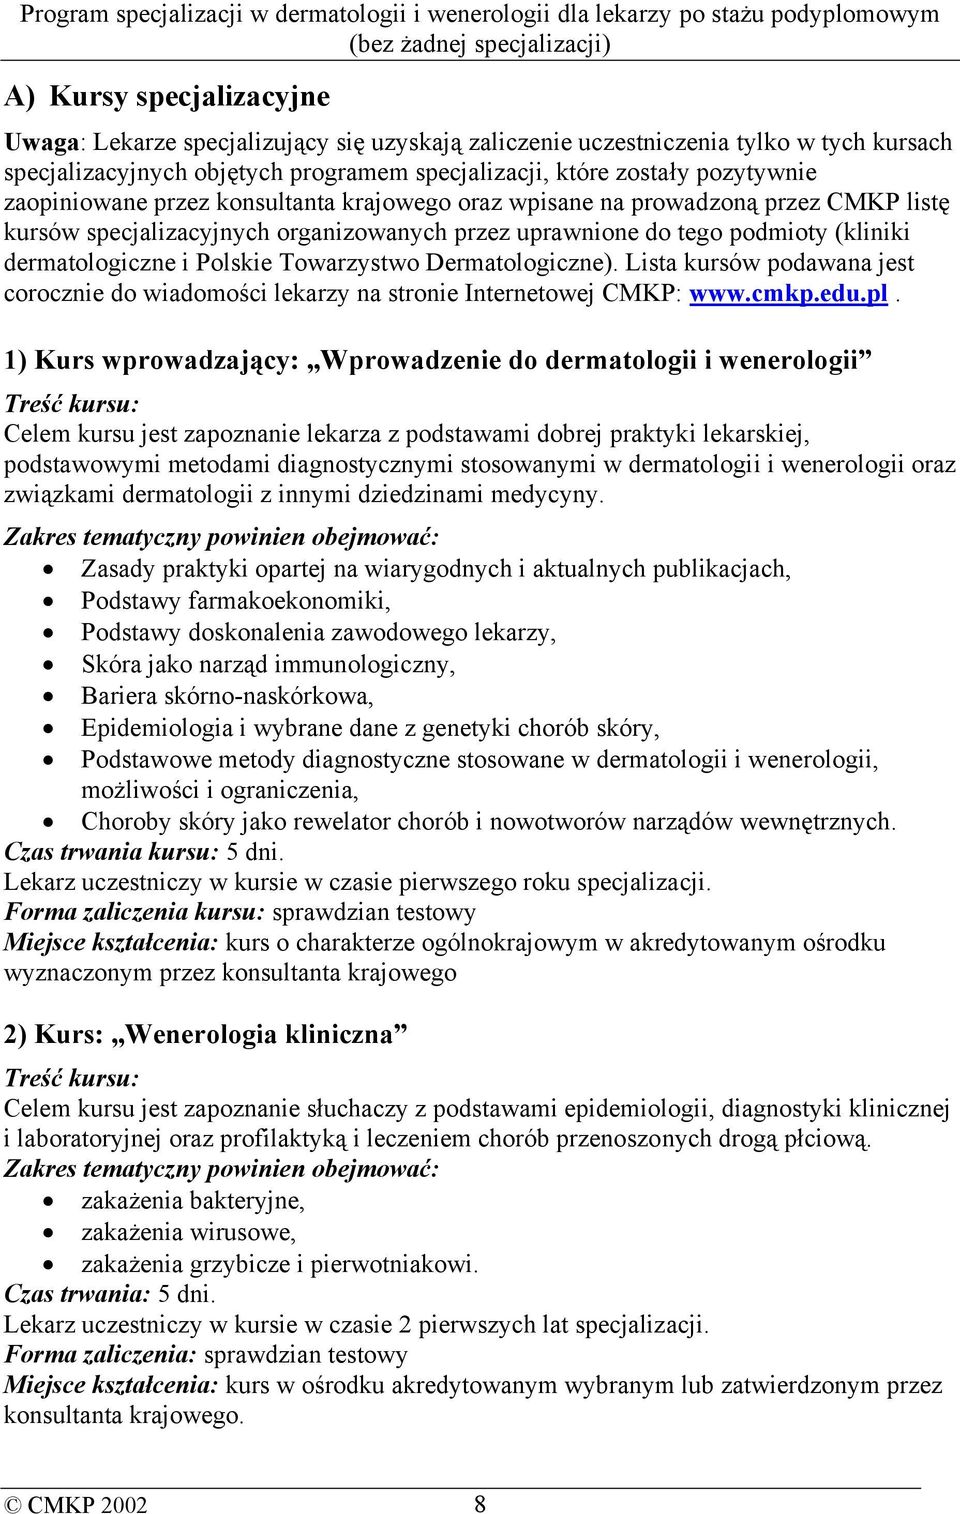 Towarzystwo Dermatologiczne). Lista kursów podawana jest corocznie do wiadomości lekarzy na stronie Internetowej CMKP: www.cmkp.edu.pl.